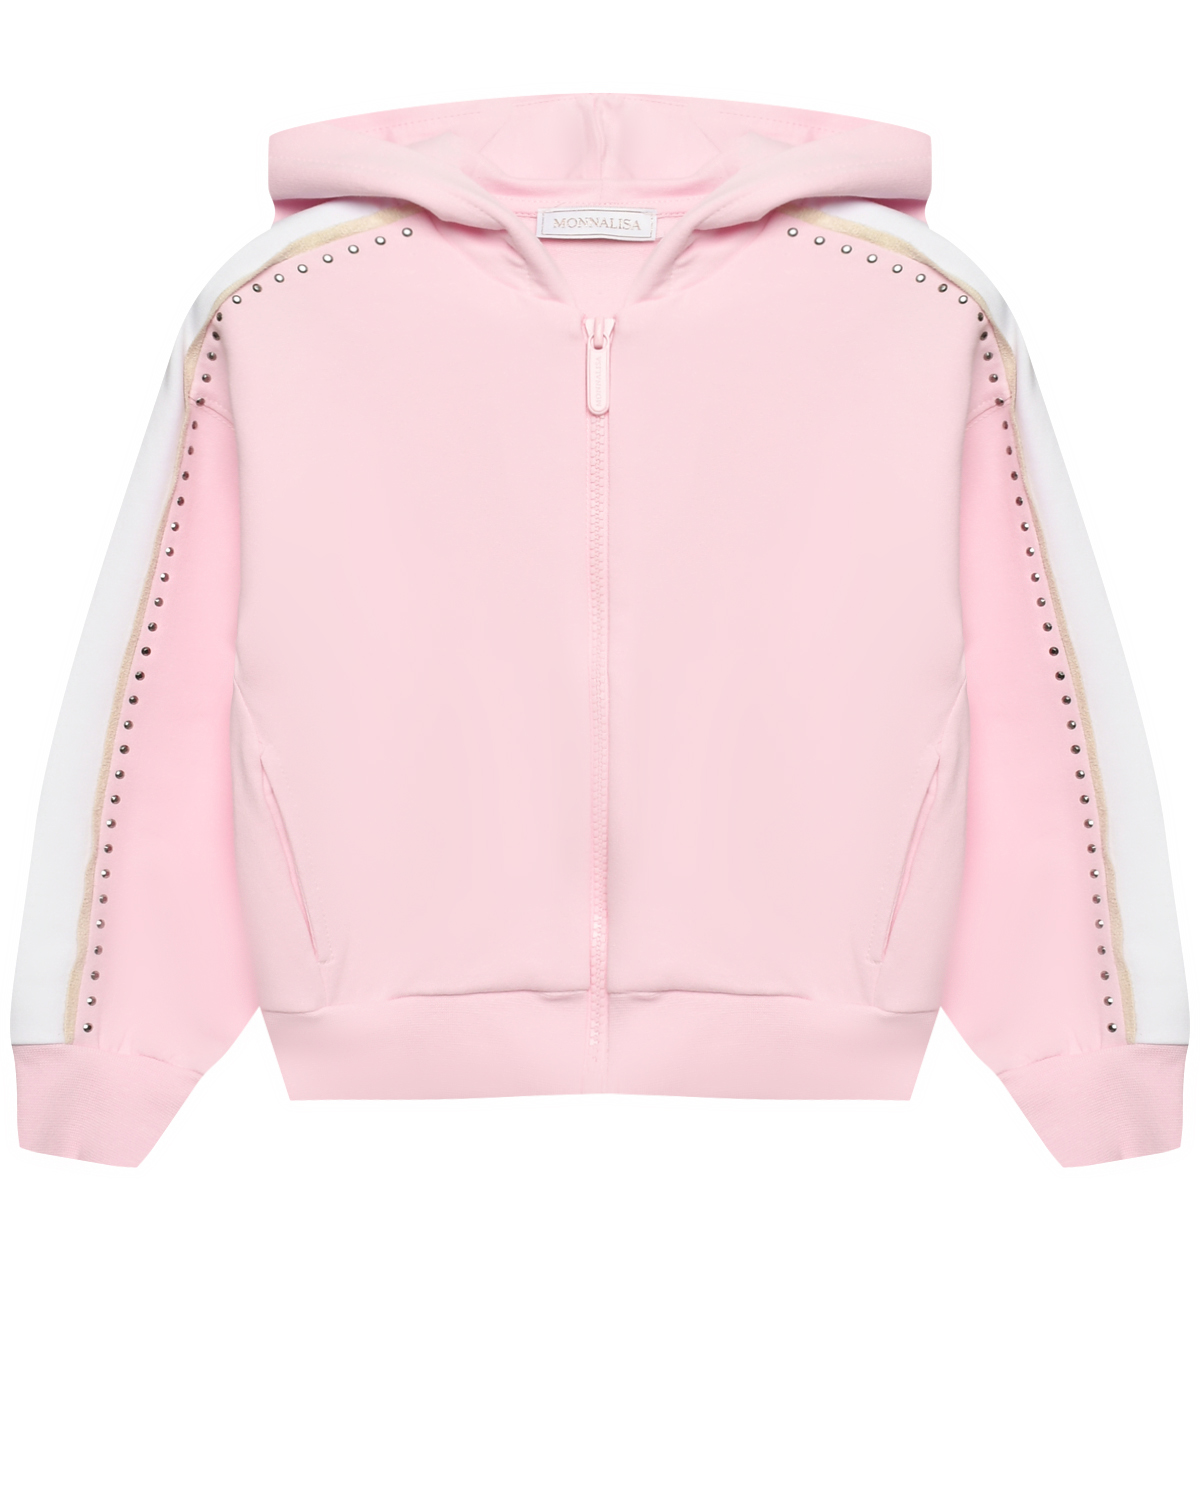 Куртка спортивная с клепками и лампасами, розовая Monnalisa, размер 104, цвет розовый - фото 1